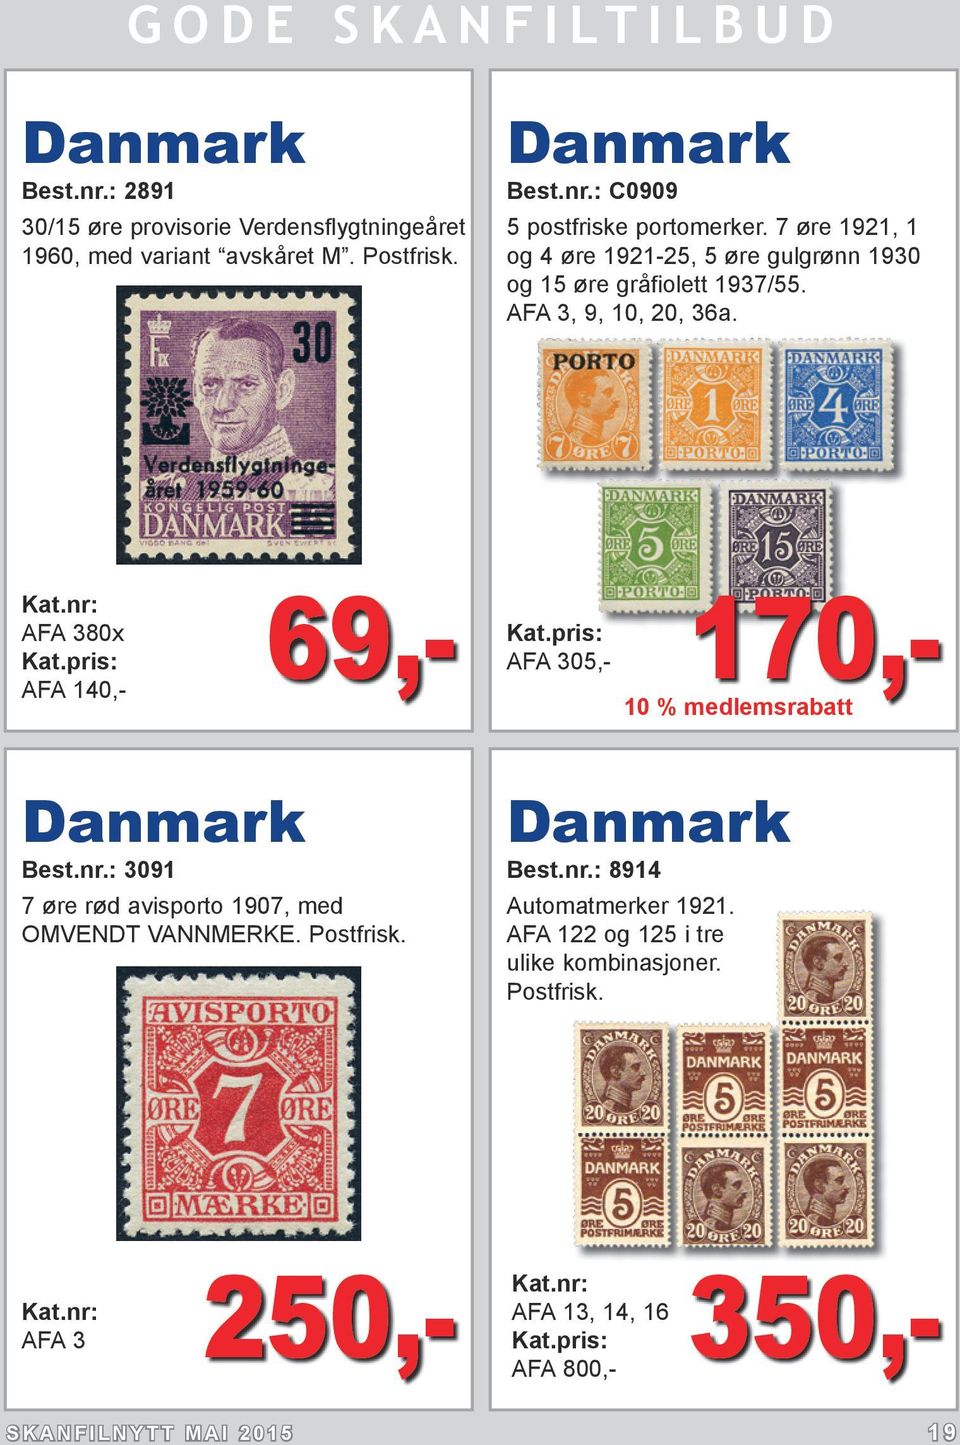 AFA 380x AFA 140,- 69,- 170,- AFA 305,- 10 % medlemsrabatt Danmark Best.nr.: 3091 7 øre rød avisporto 1907, med OMVENDT VANNMERKE. Postfrisk.